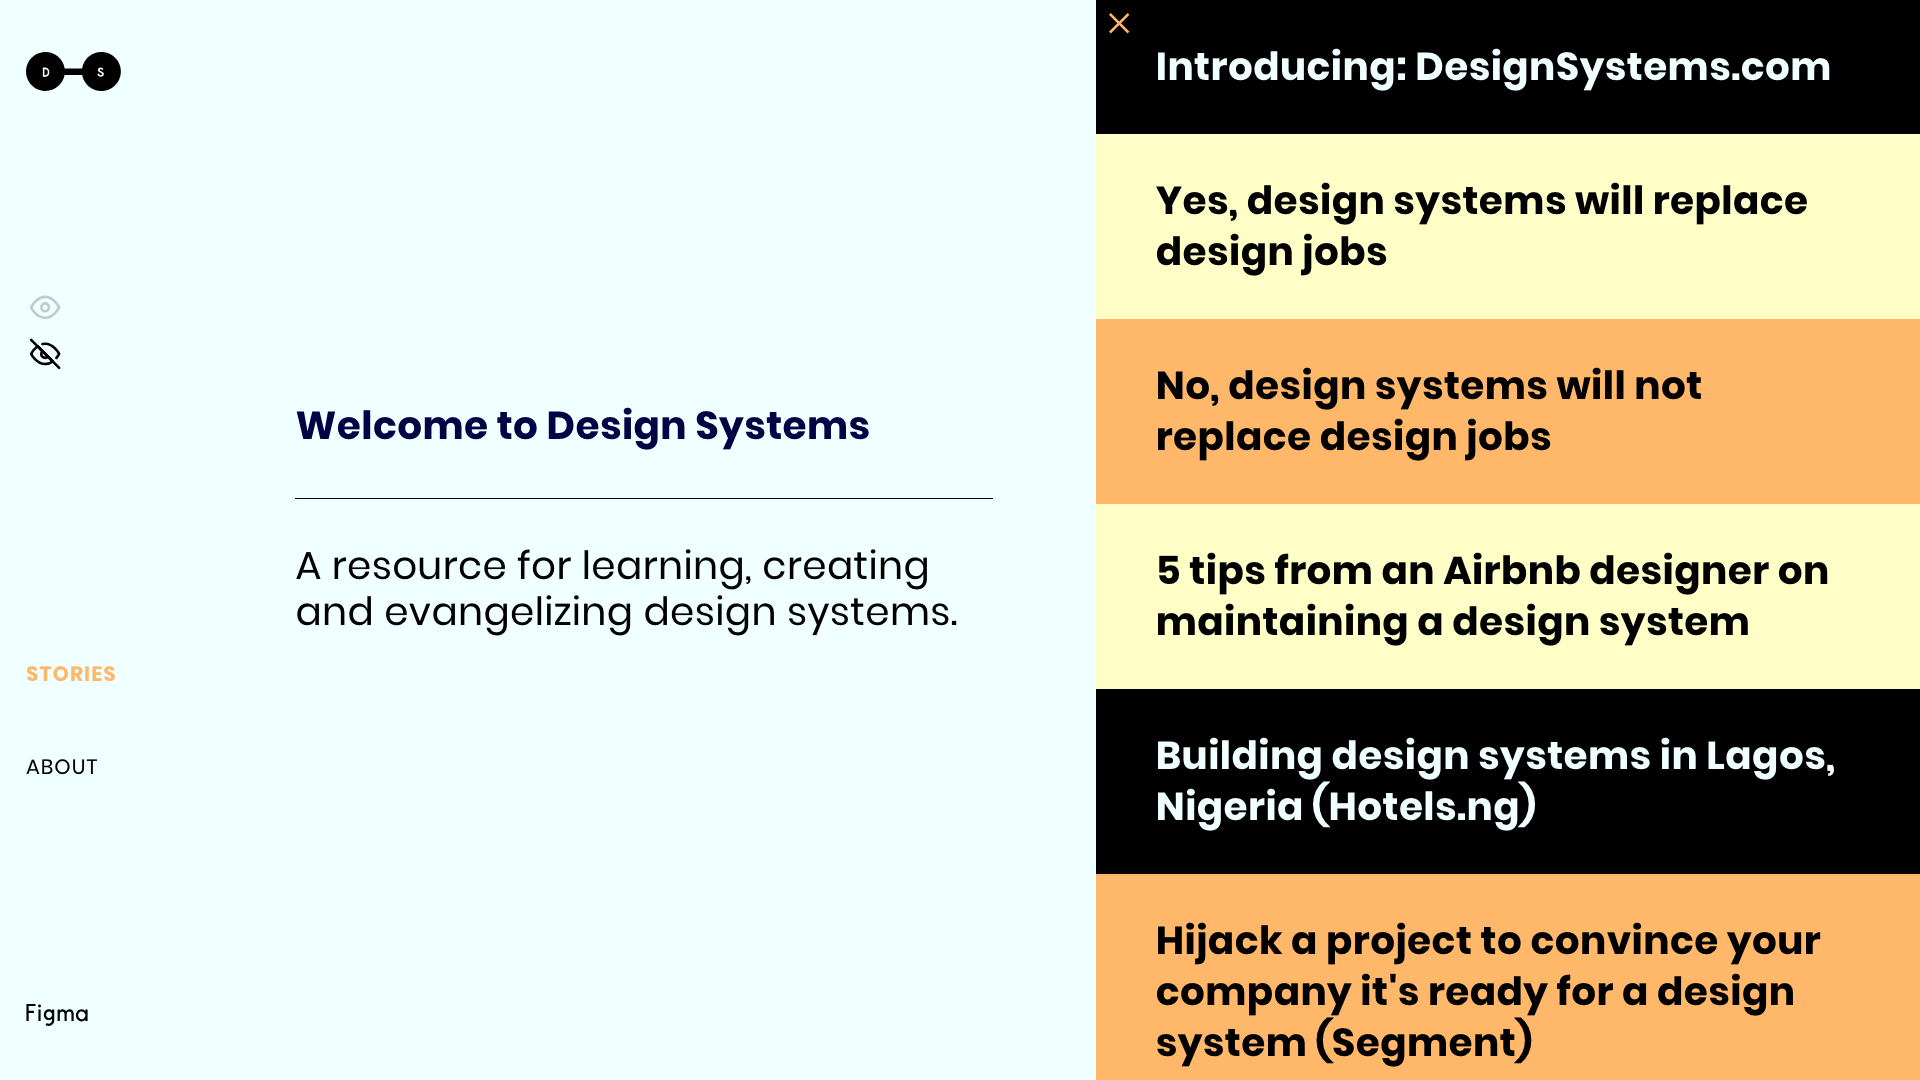 DesignSystems.com